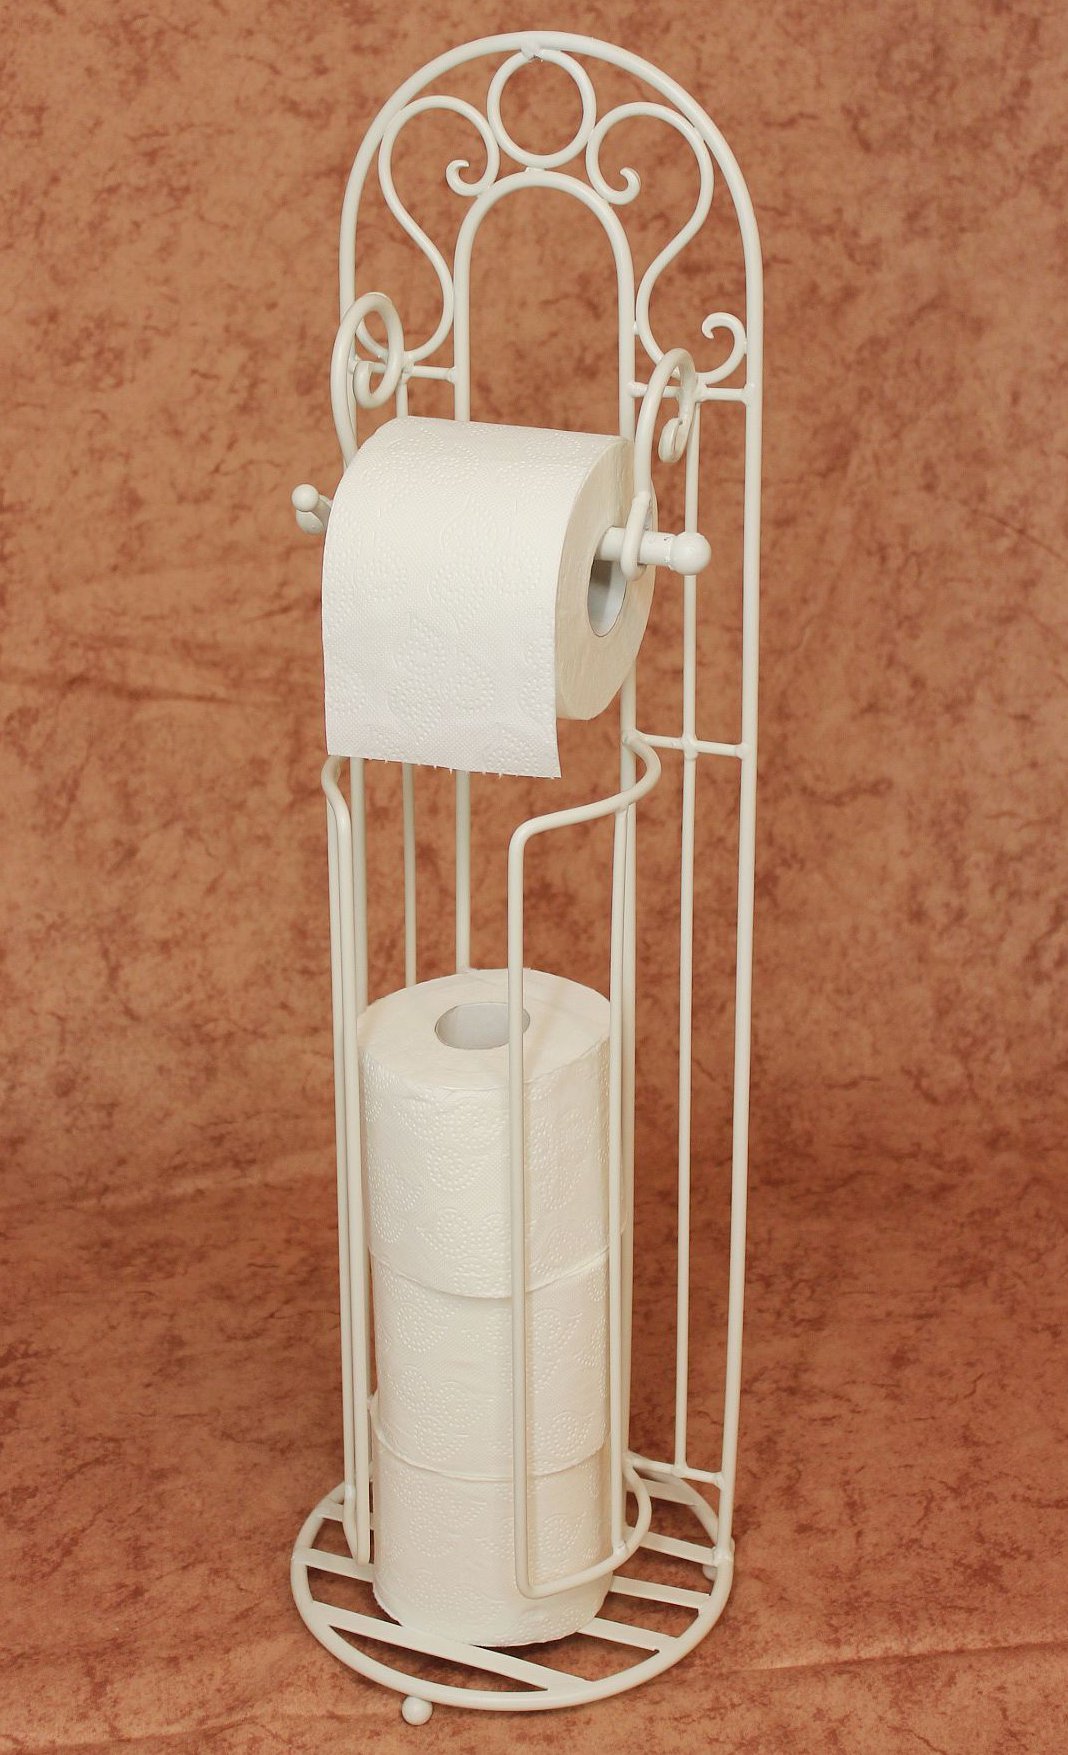 Ambiente Toilettenrollenständer Increto Weiß 92100 Toilettenpapierhalter Rollenständer